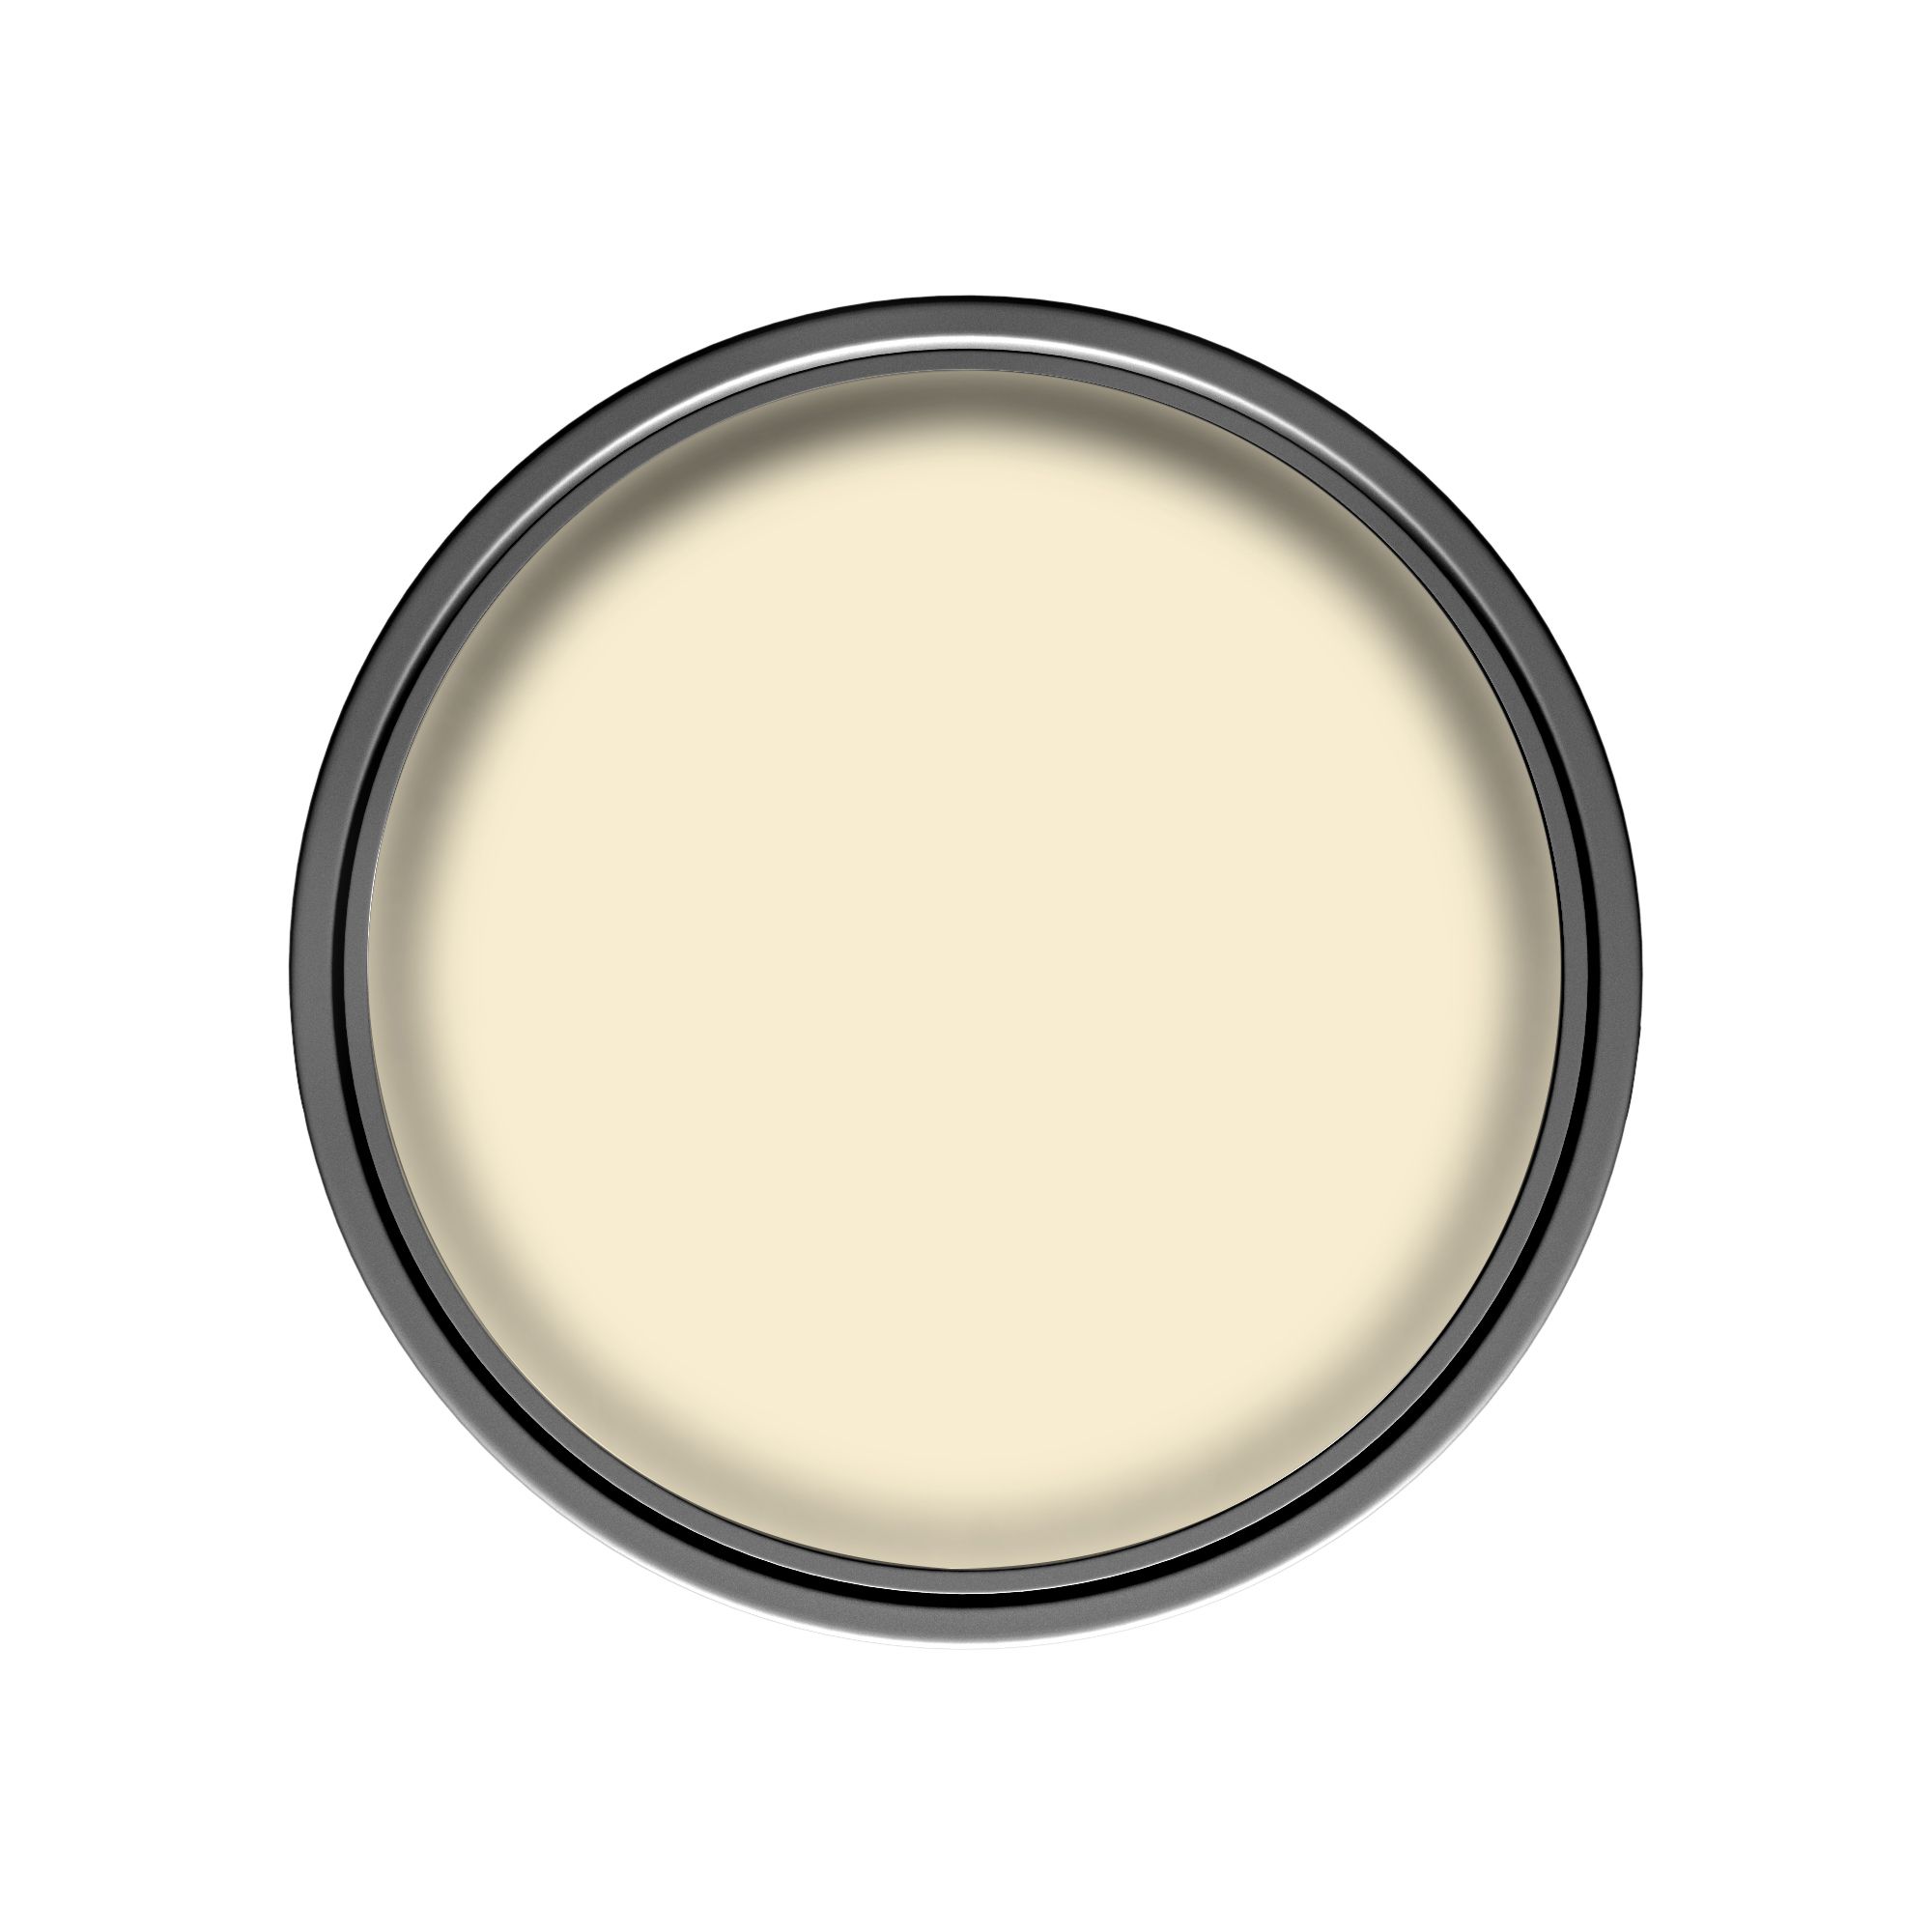 Dulux Easycare Daffodil white Matt Emulsion paint, 2.5L